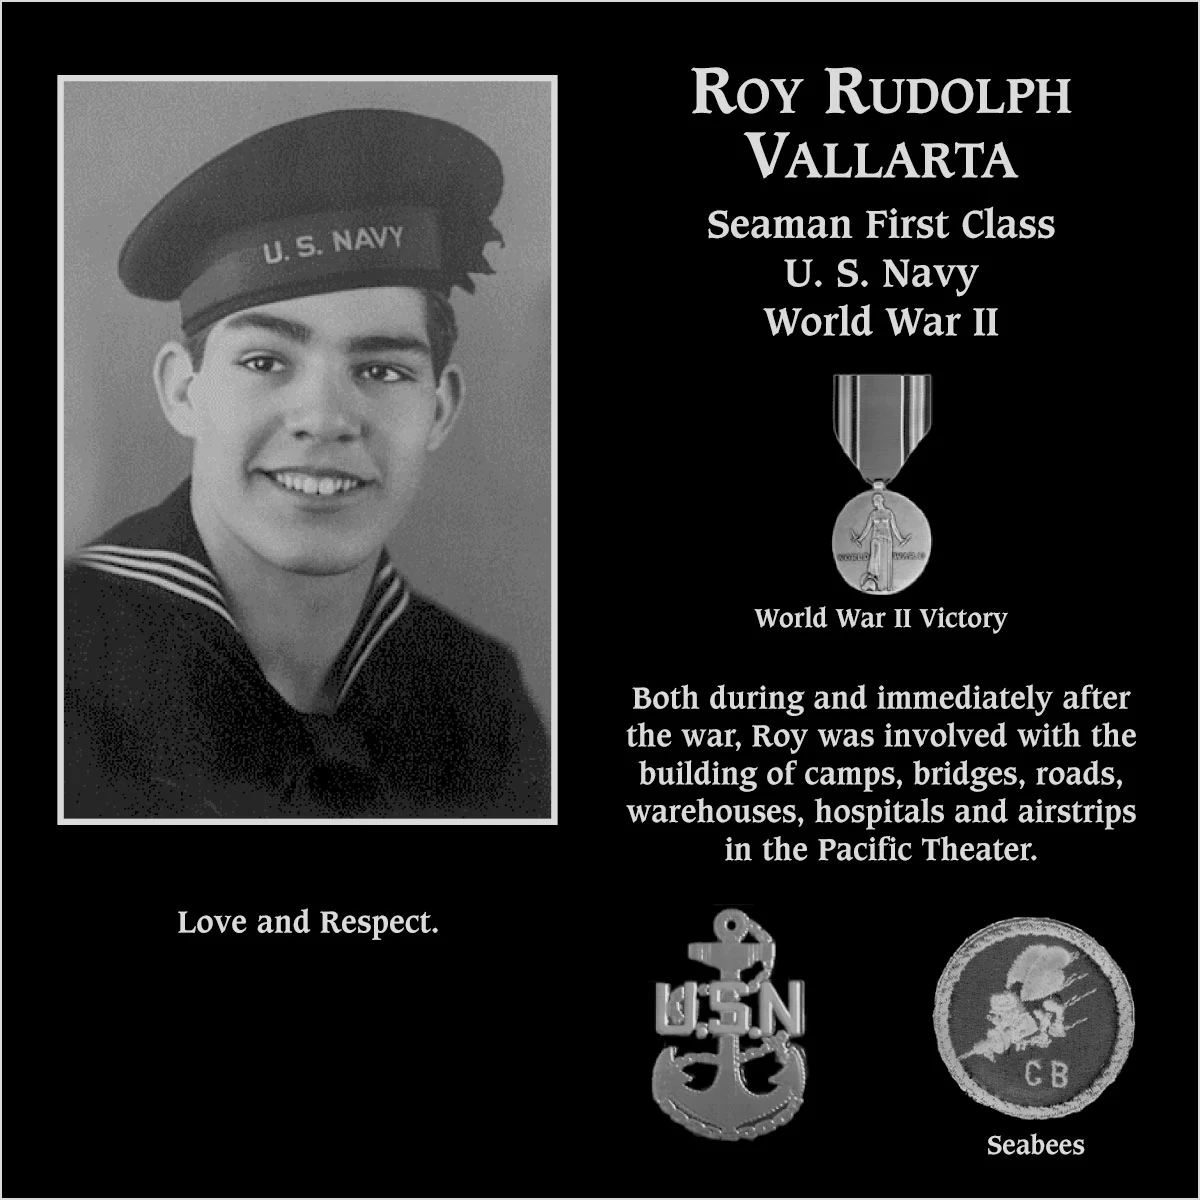 Roy Rudolph Vallarta